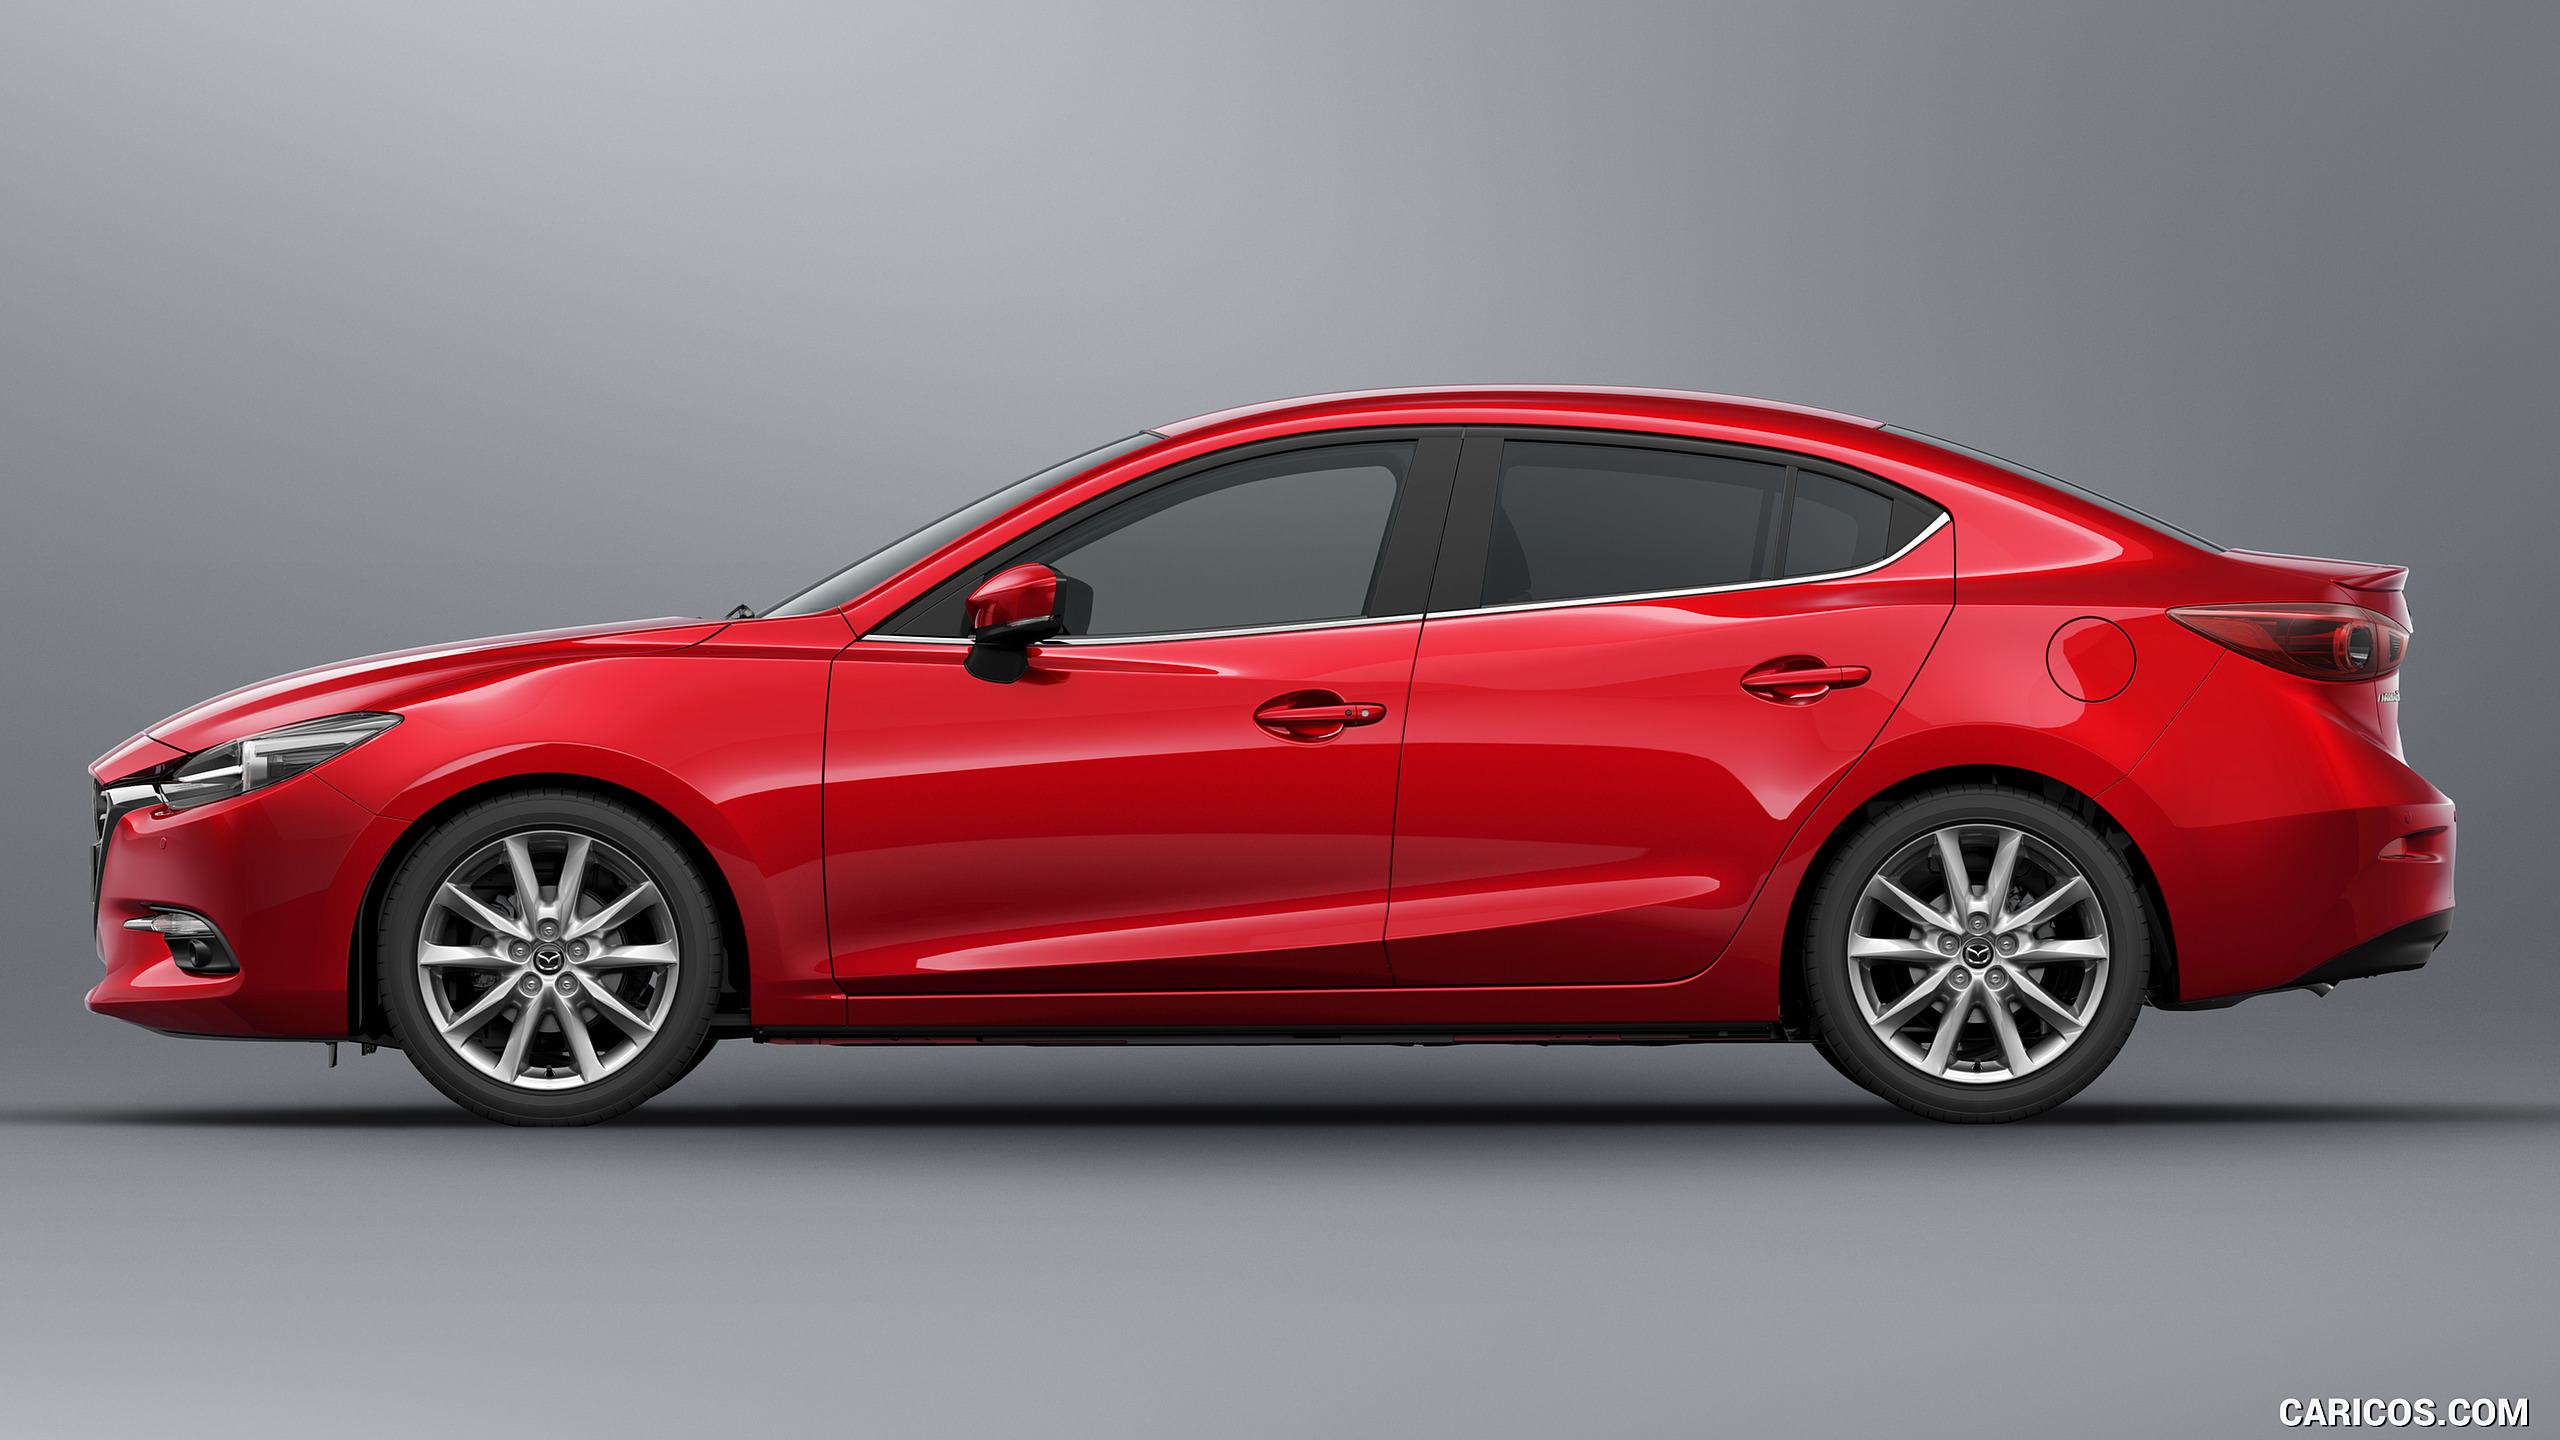 2017 Mazda 3 Sedan - Side, #6 of 13